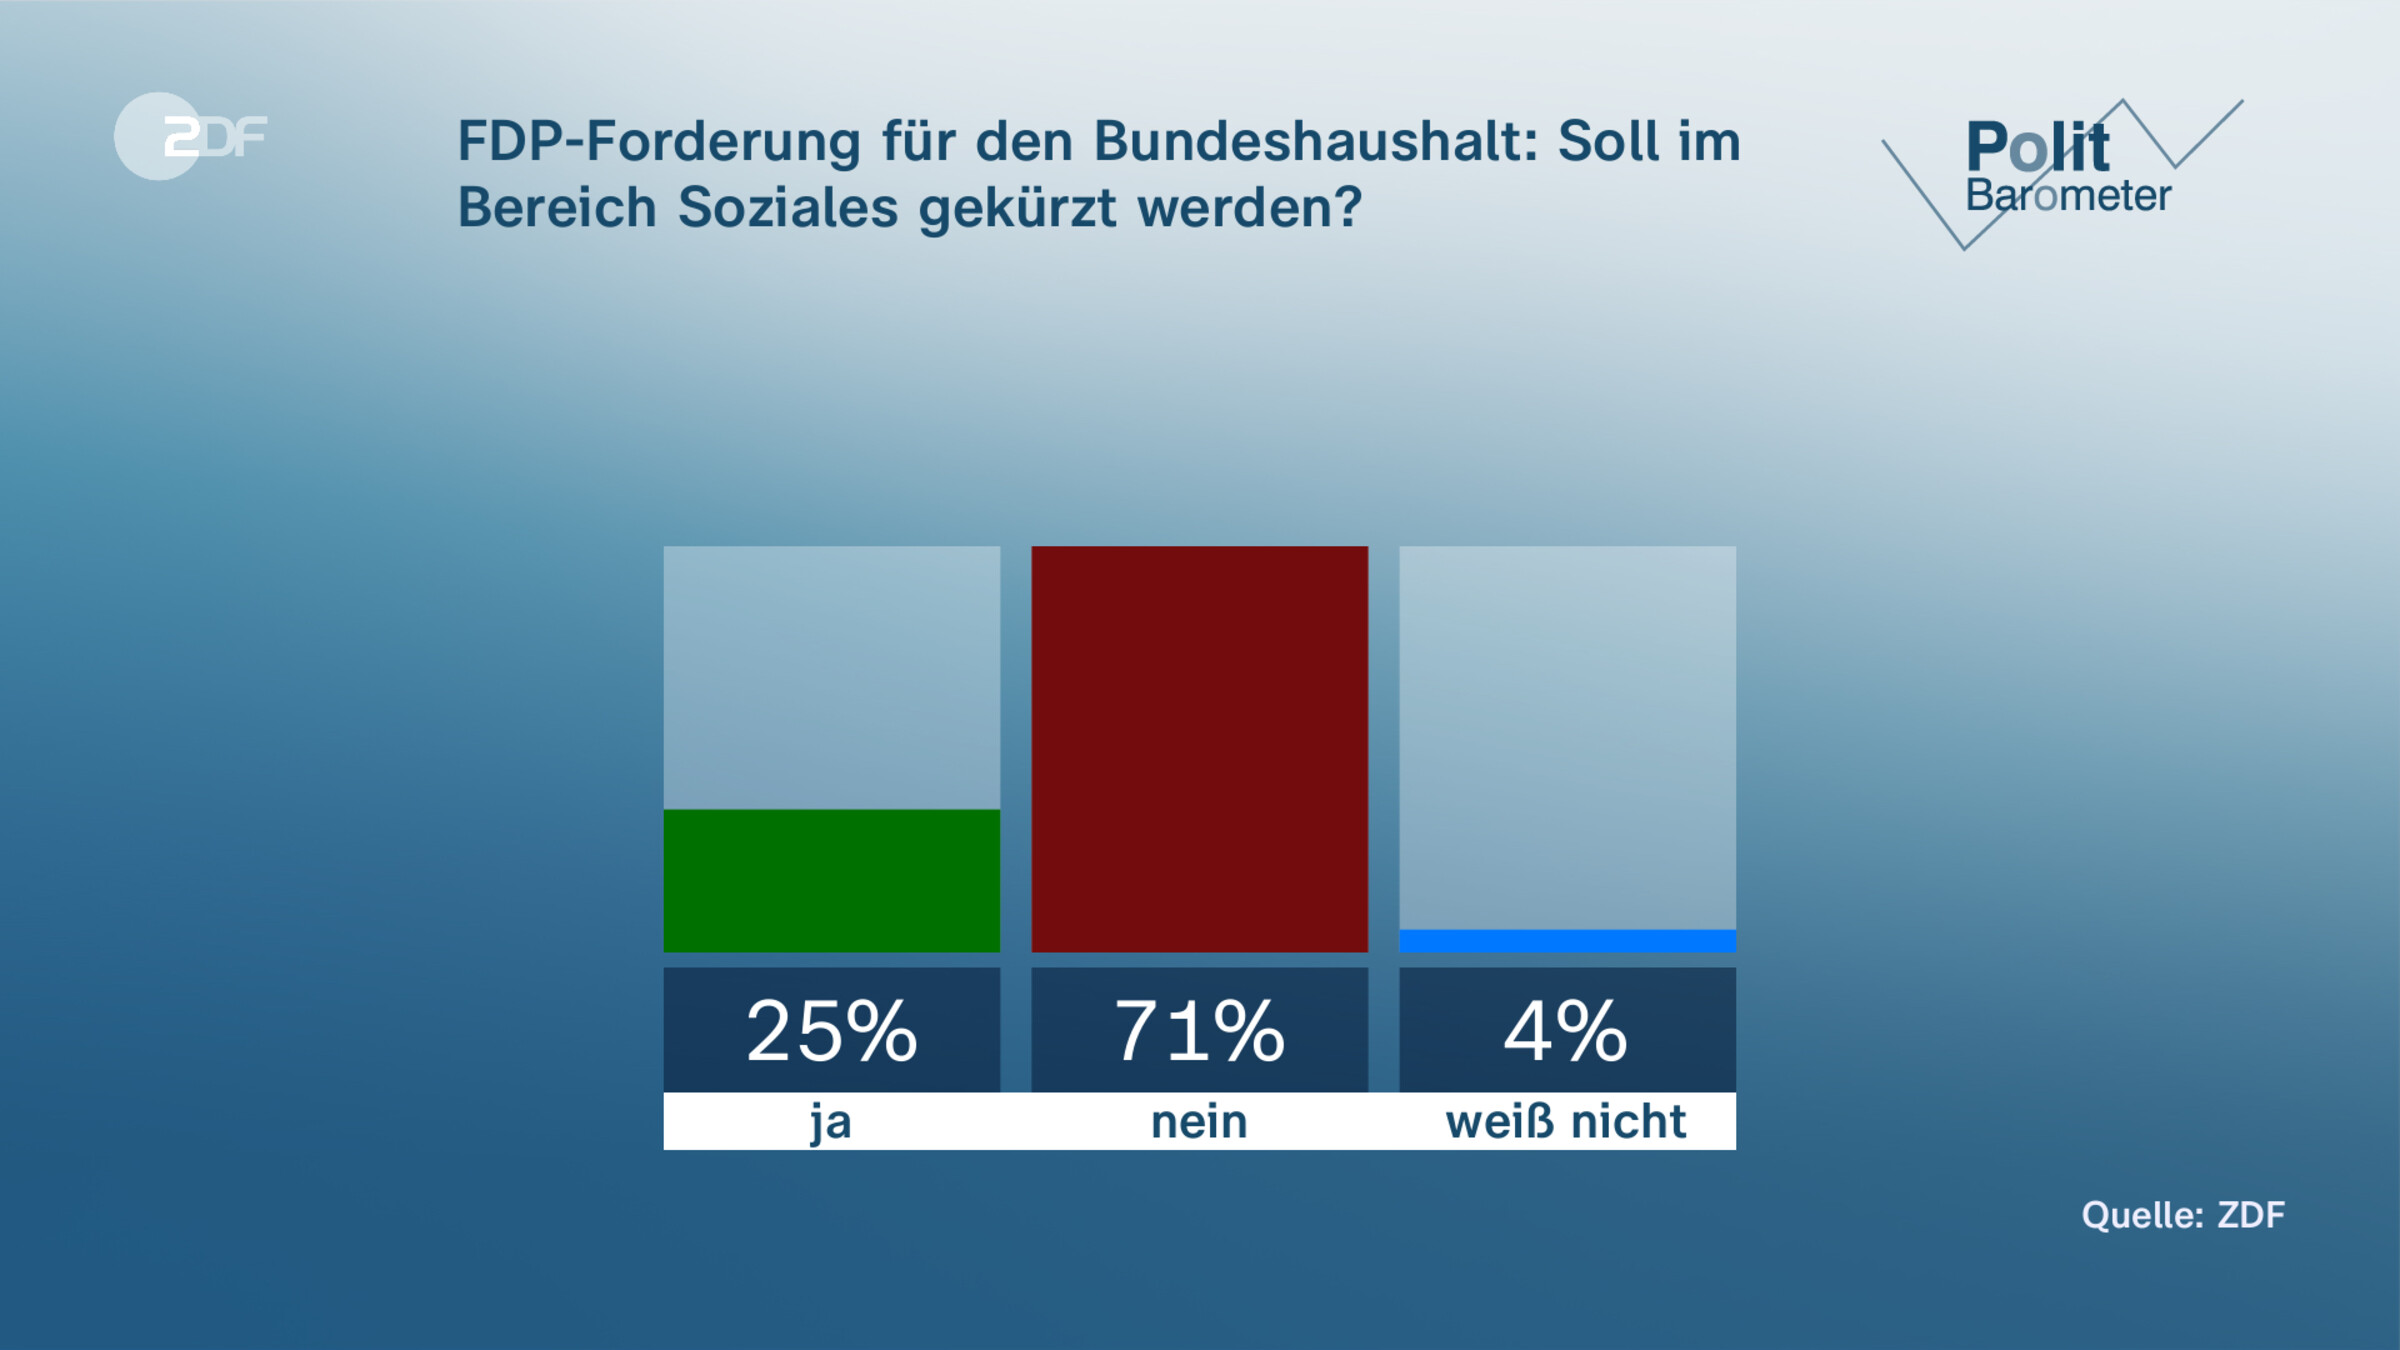 FDP-Forderung für den Bundeshaushalt: Soll im Bereich Soziales gekürzt werden?